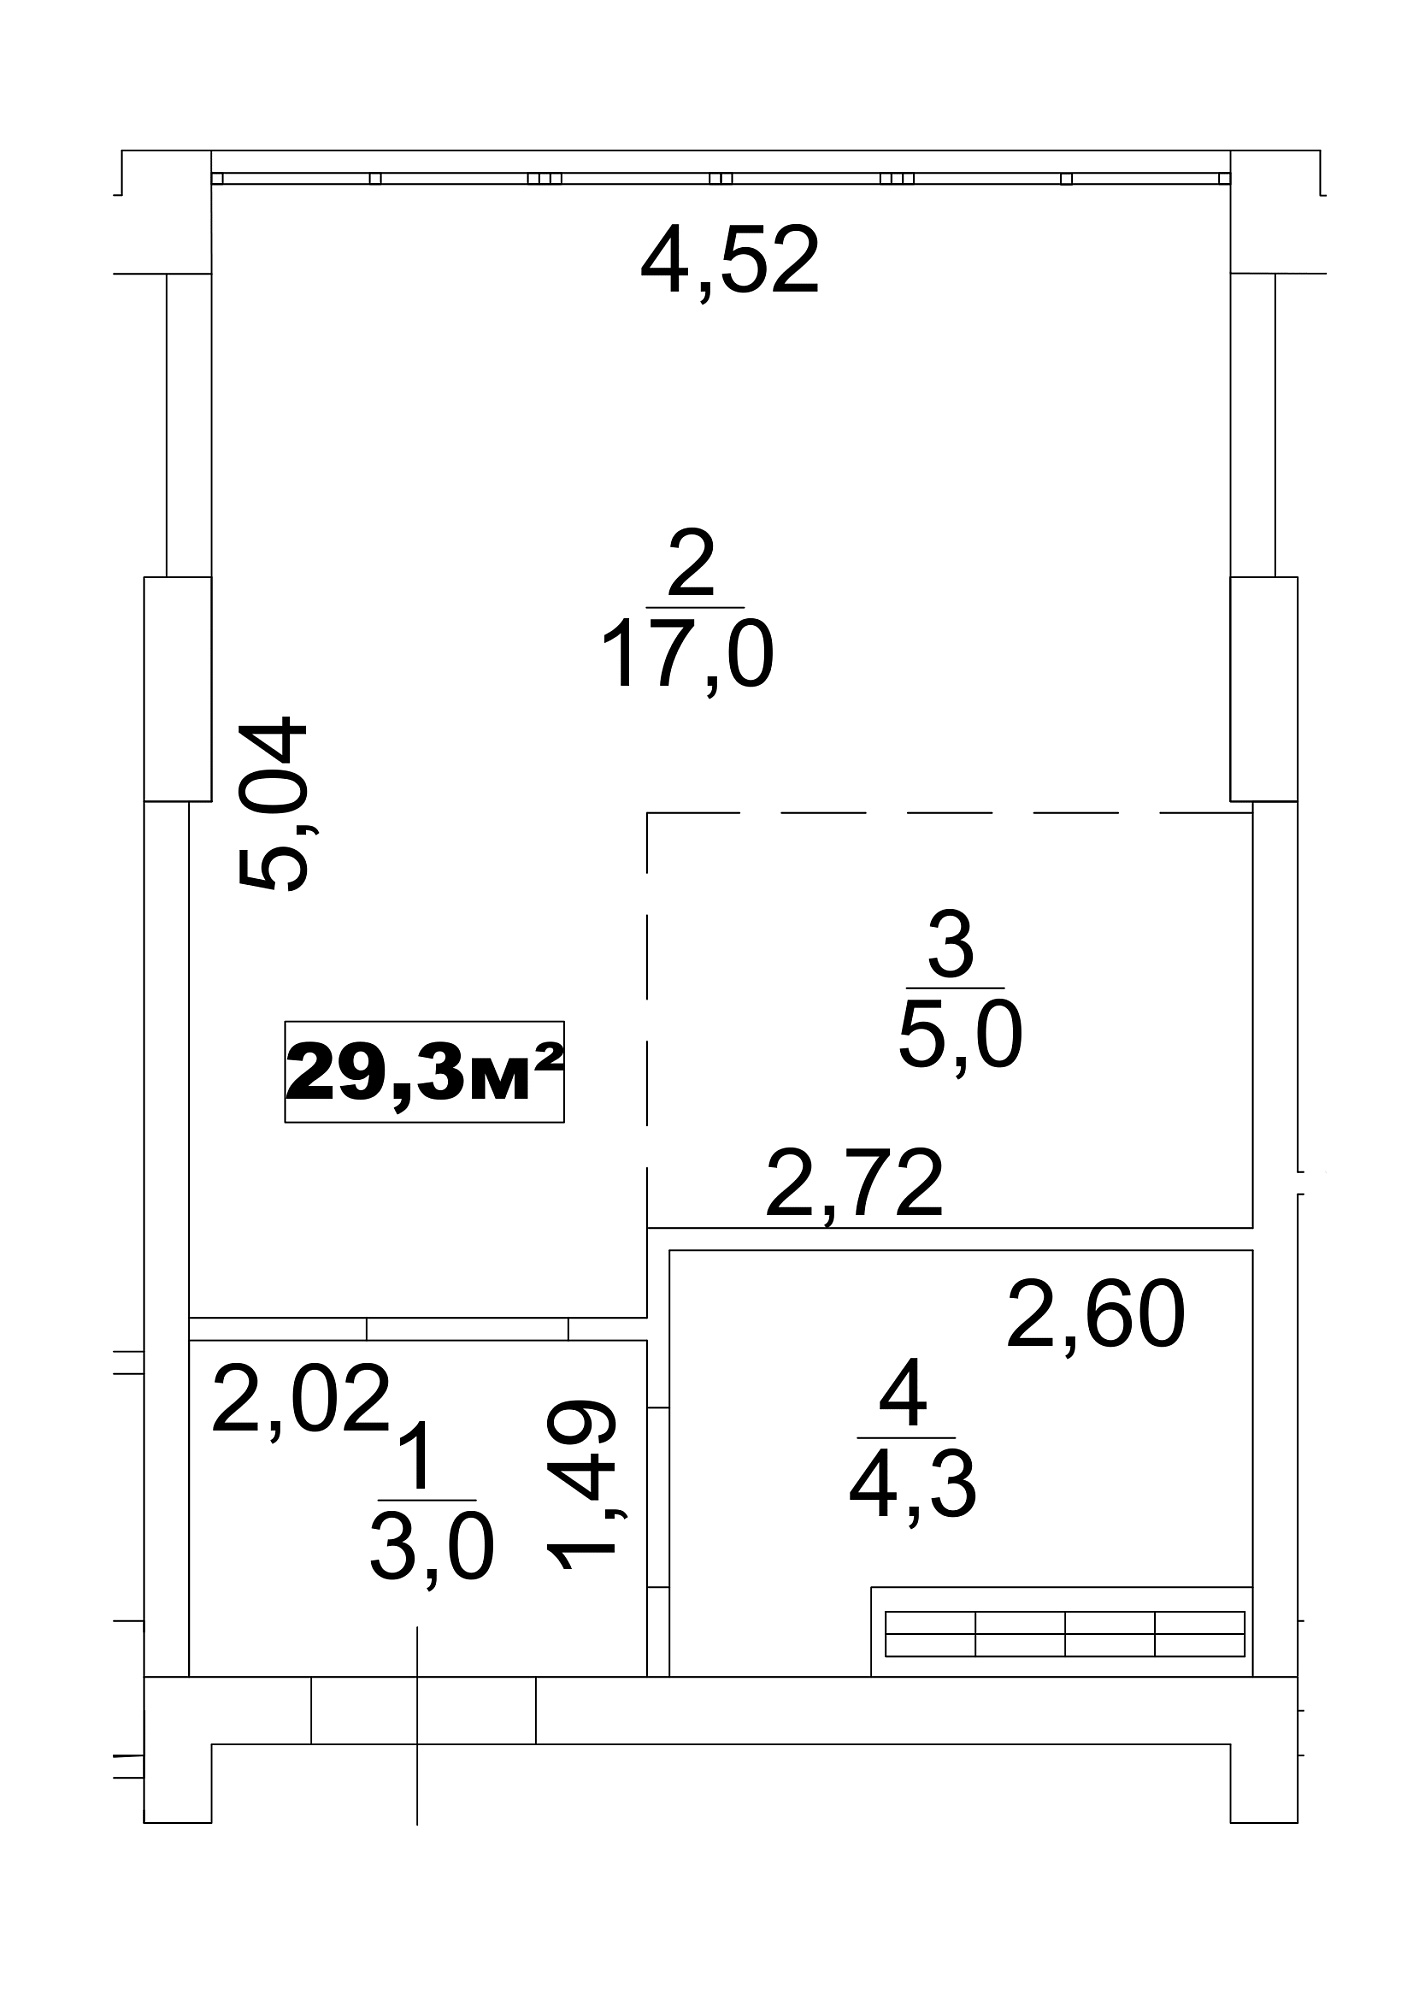 Планування Smart-квартира площею 29.3м2, AB-13-07/00056.